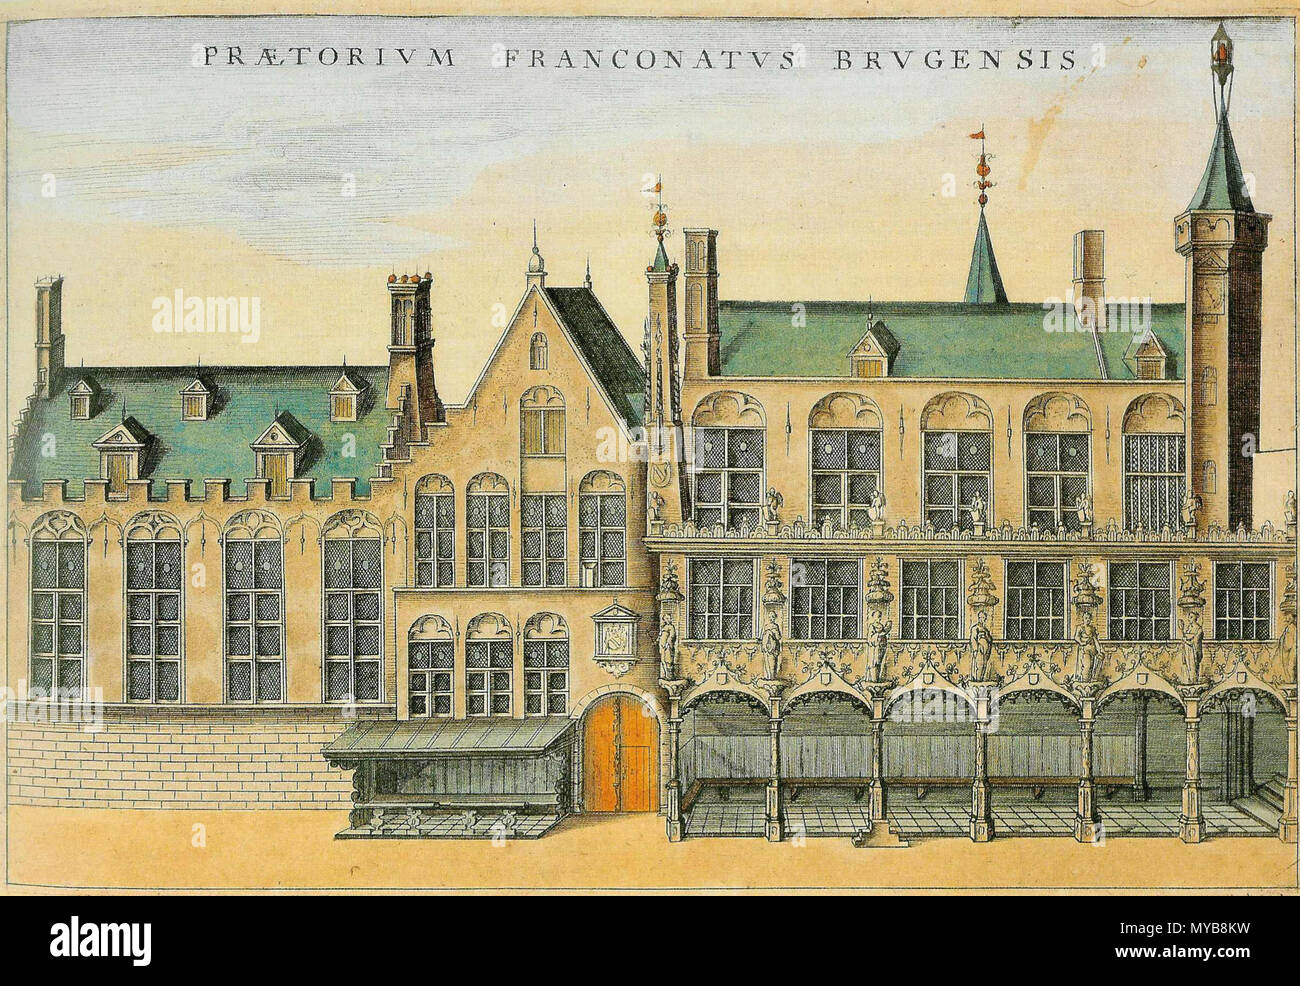 Briesje impliciet zelf Het Nederlands Landhuis van het Brugse Vrije op de Burg te Brugge (België).  En 1440, Gebouwd de galerij rechts en Gotische stijl werd gebouwd en 1532.  En 1722 die plaats